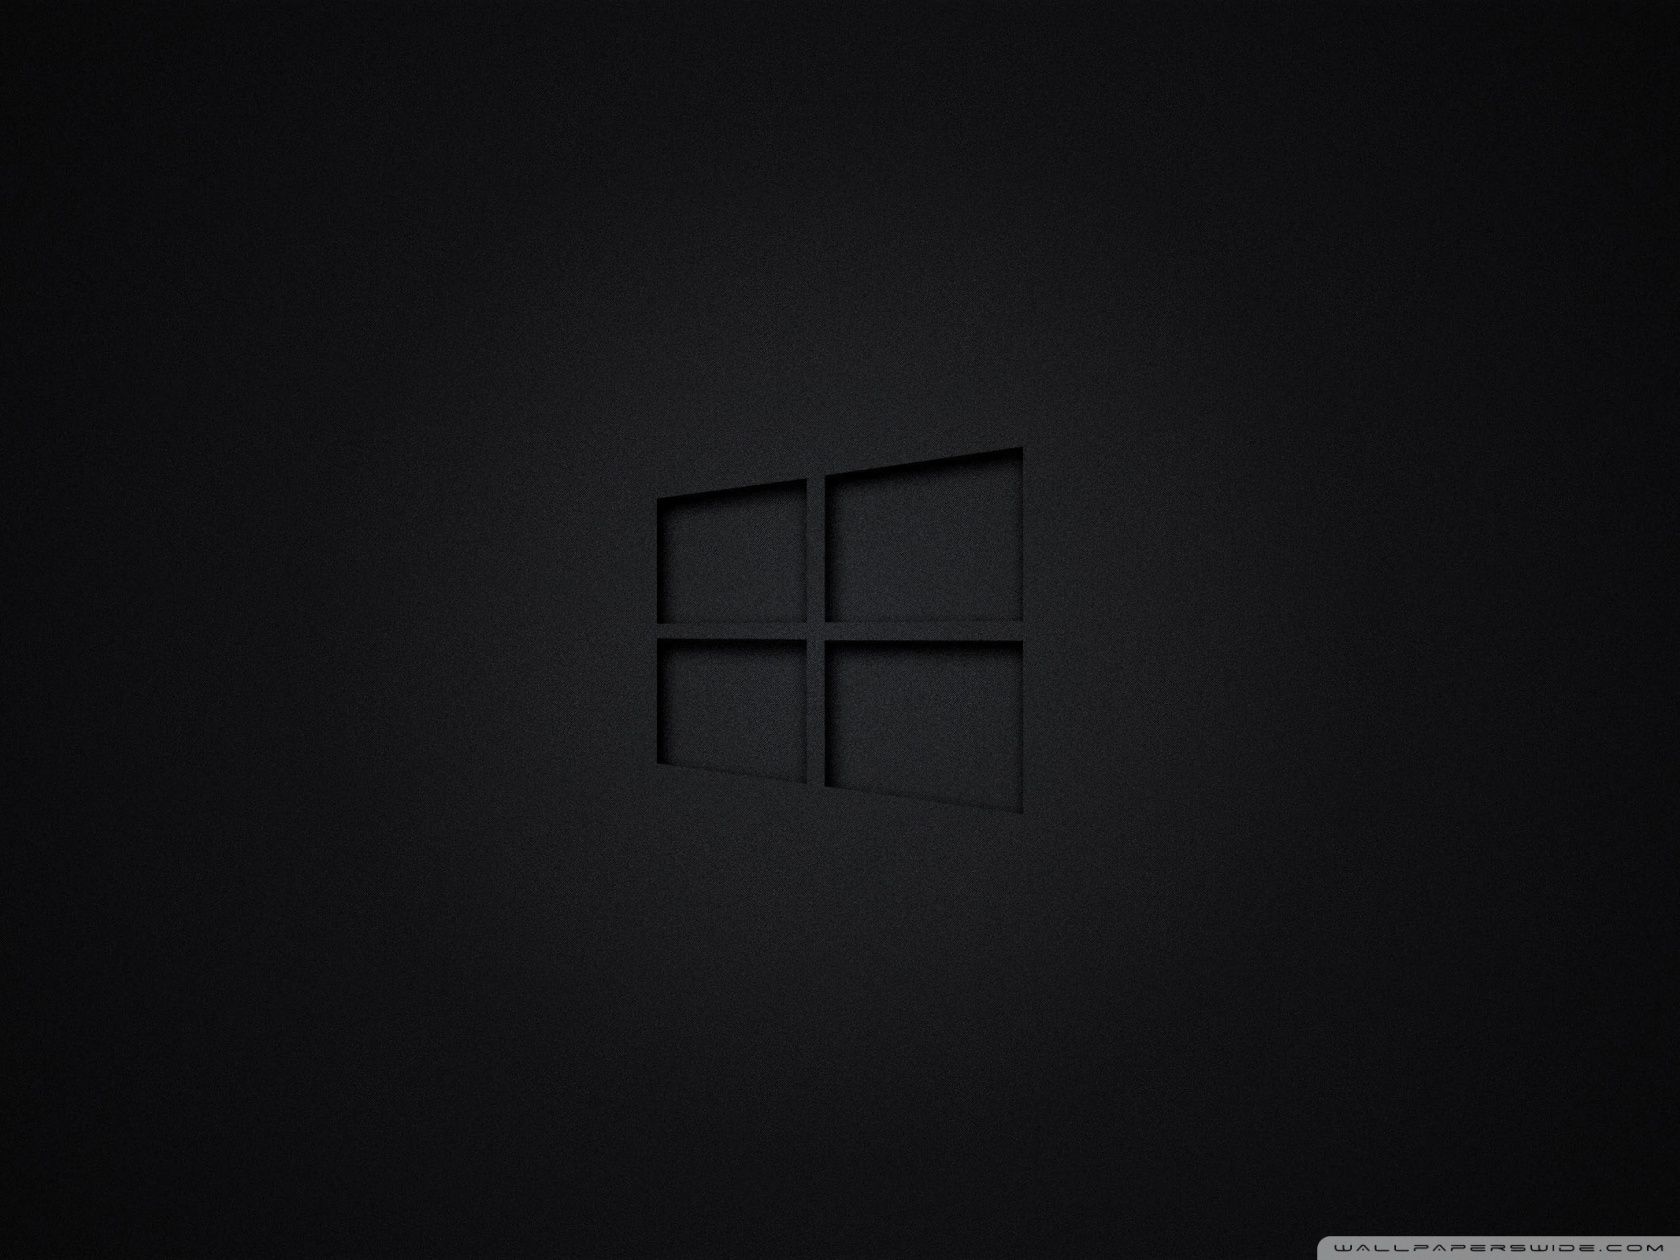 deskscapes windows 10 black background